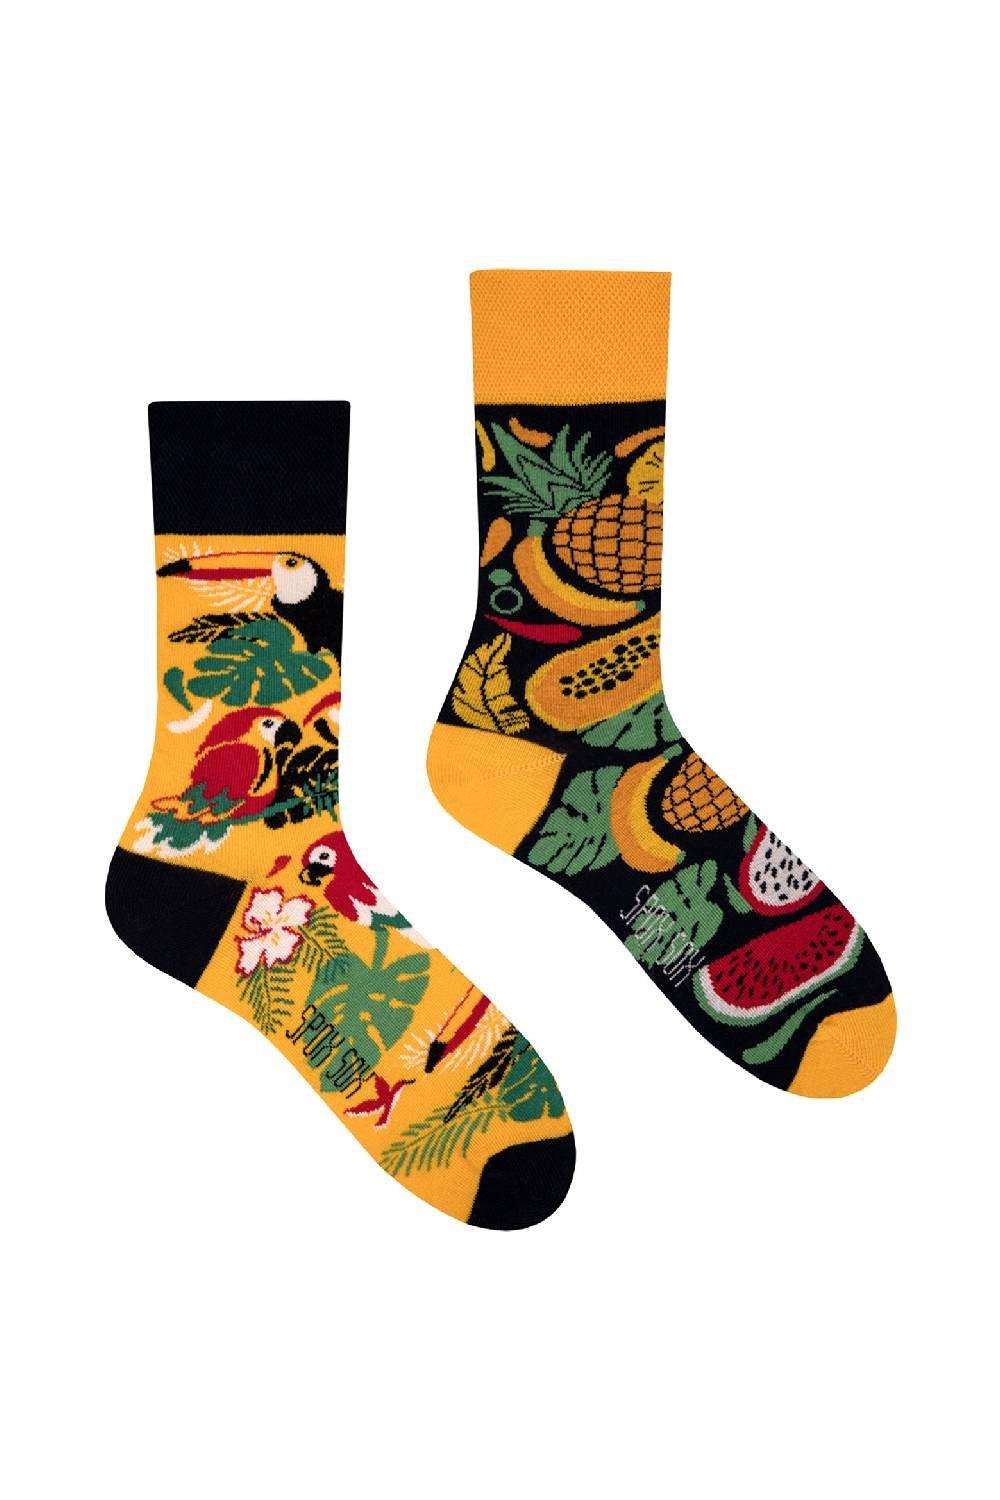 Mismatched Novelty Odd Socks - Tropical